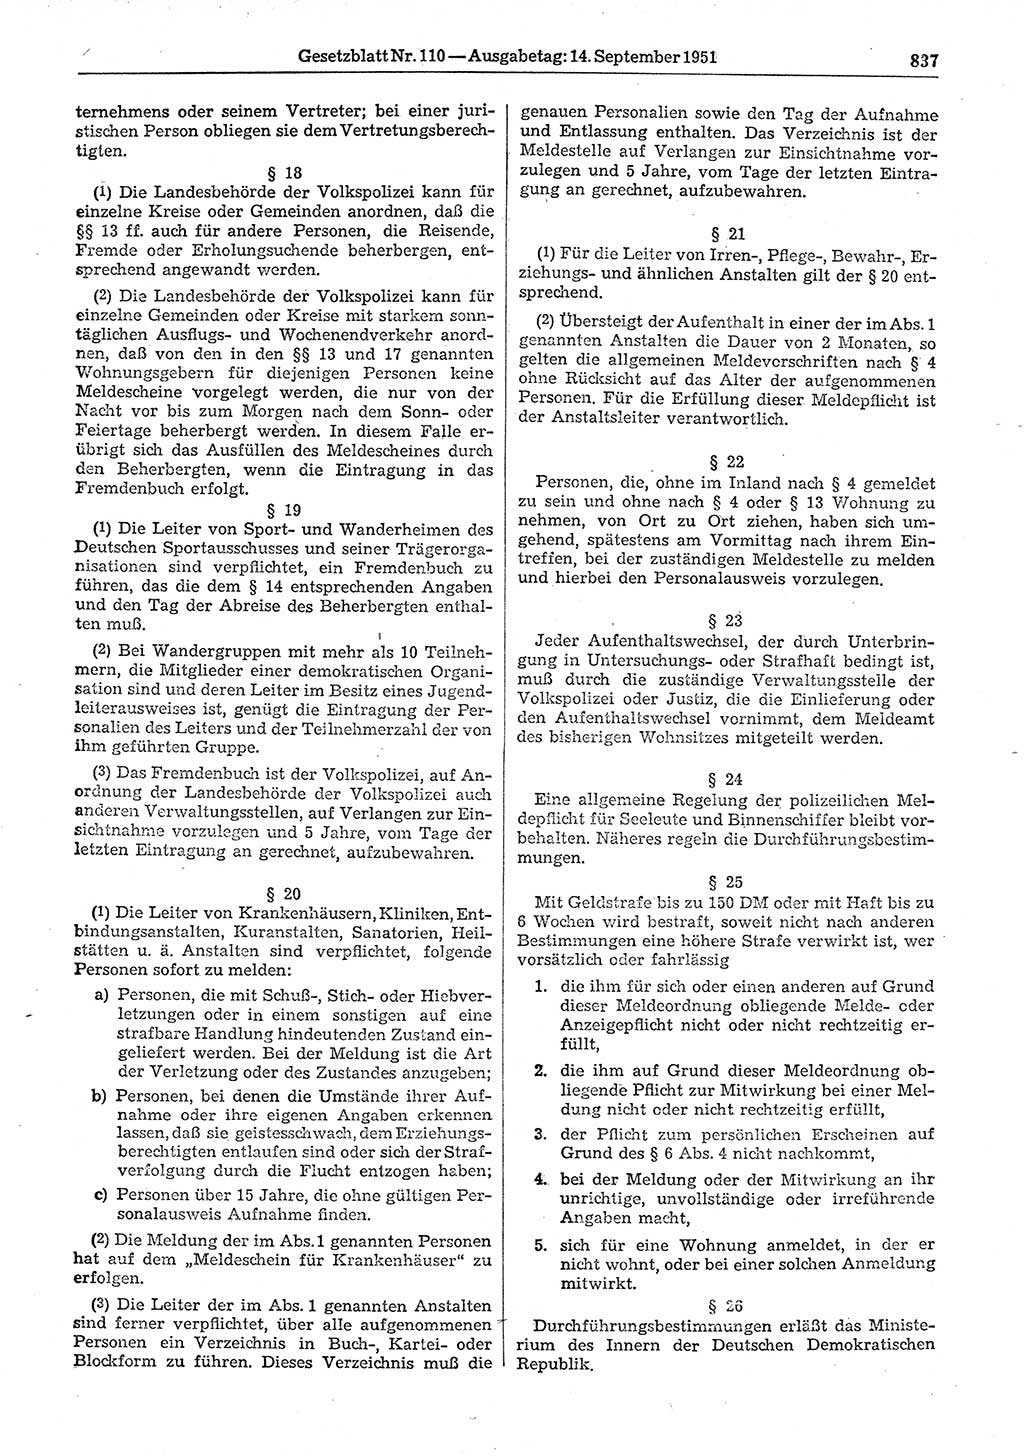 Gesetzblatt (GBl.) der Deutschen Demokratischen Republik (DDR) 1951, Seite 837 (GBl. DDR 1951, S. 837)